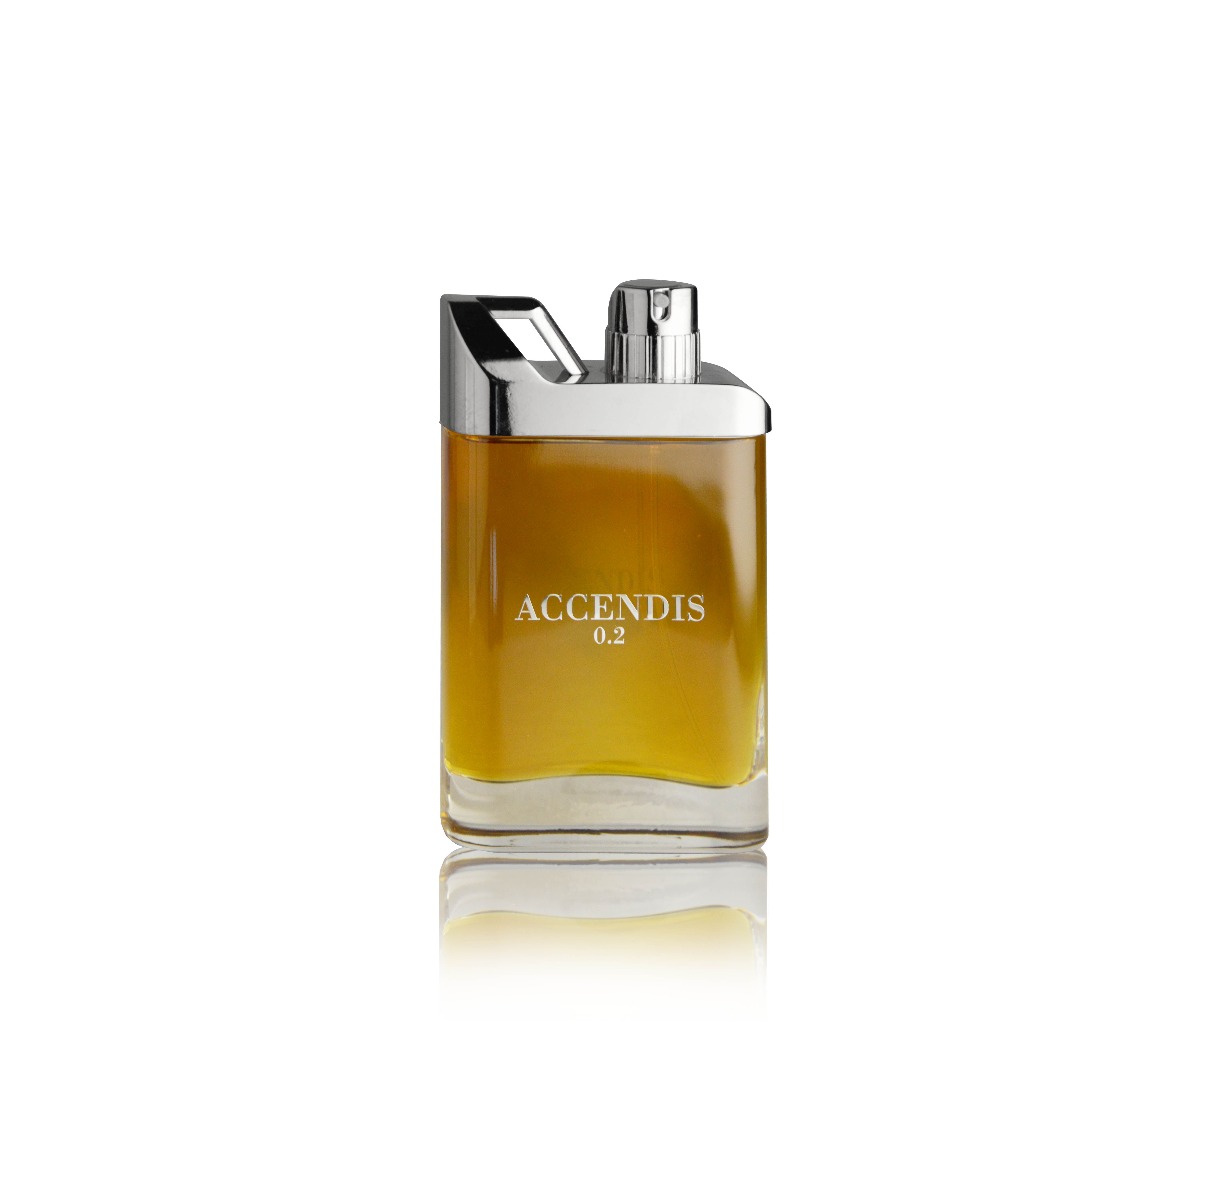 Accendis - 0.2 - Trilogie Collection - Eau de Parfum 100 ml